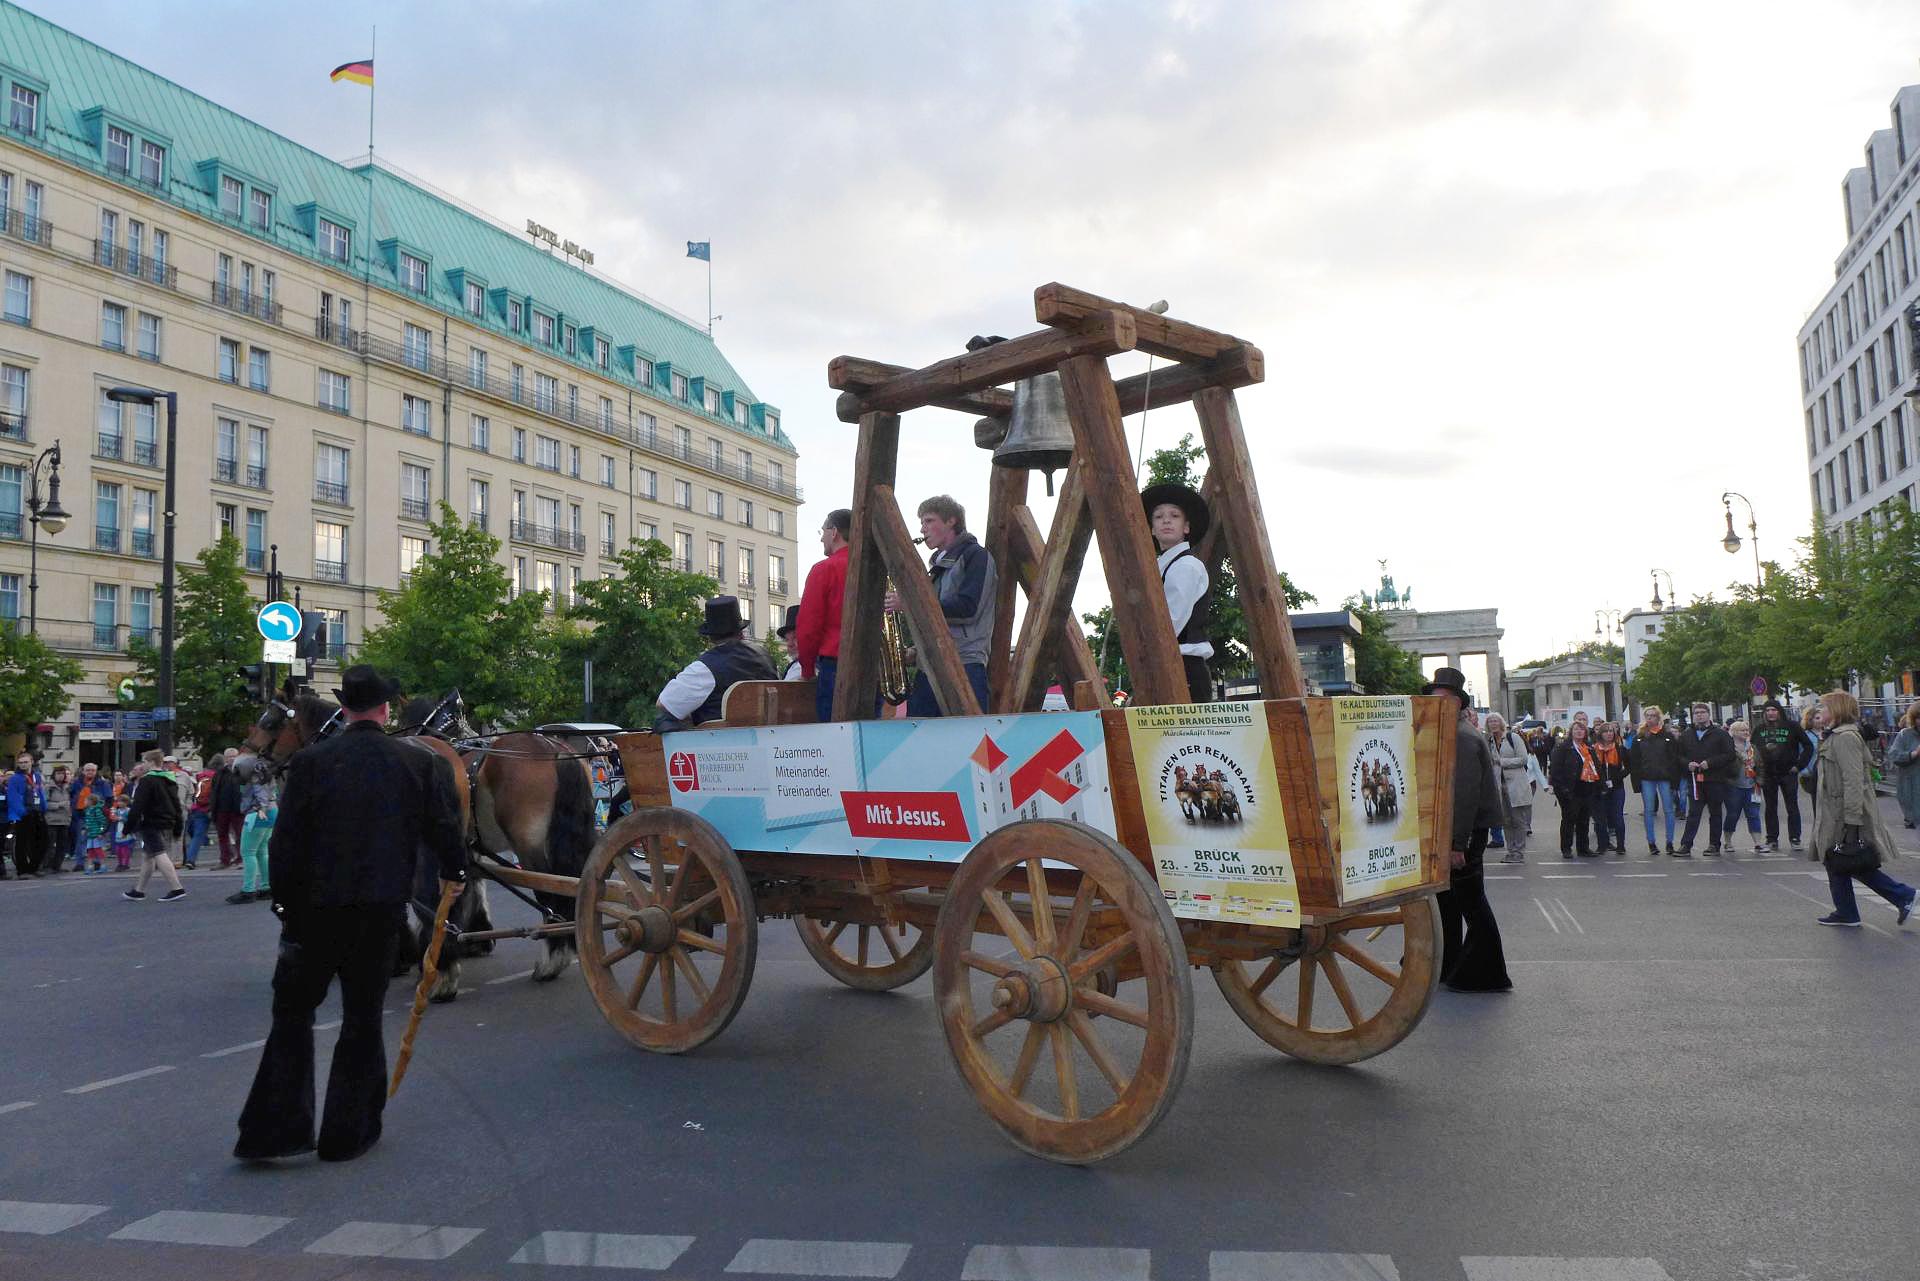 Pferdeglockenprozession vor dem Brandenburger Tor - Kirchentag 2017 in Berlin